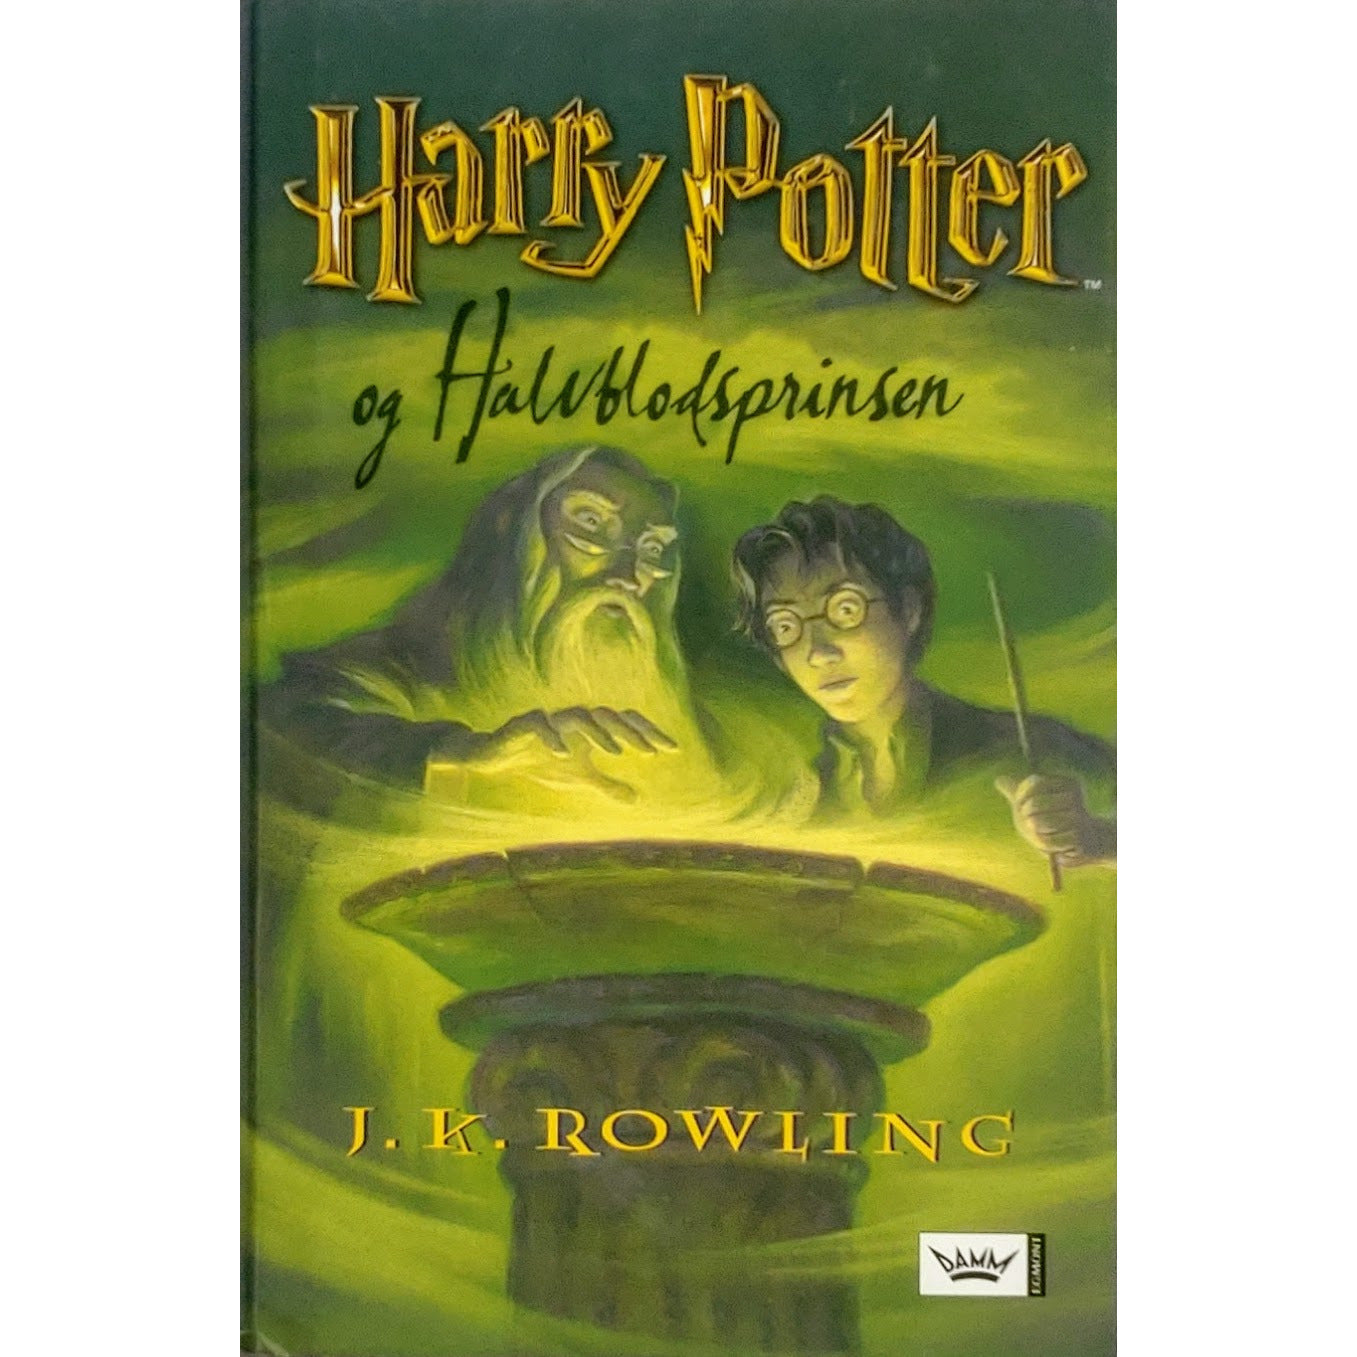 Harry Potter og Halvblodsprinsen - Harry Potter 6, brukte bøker av J.K. Rowling